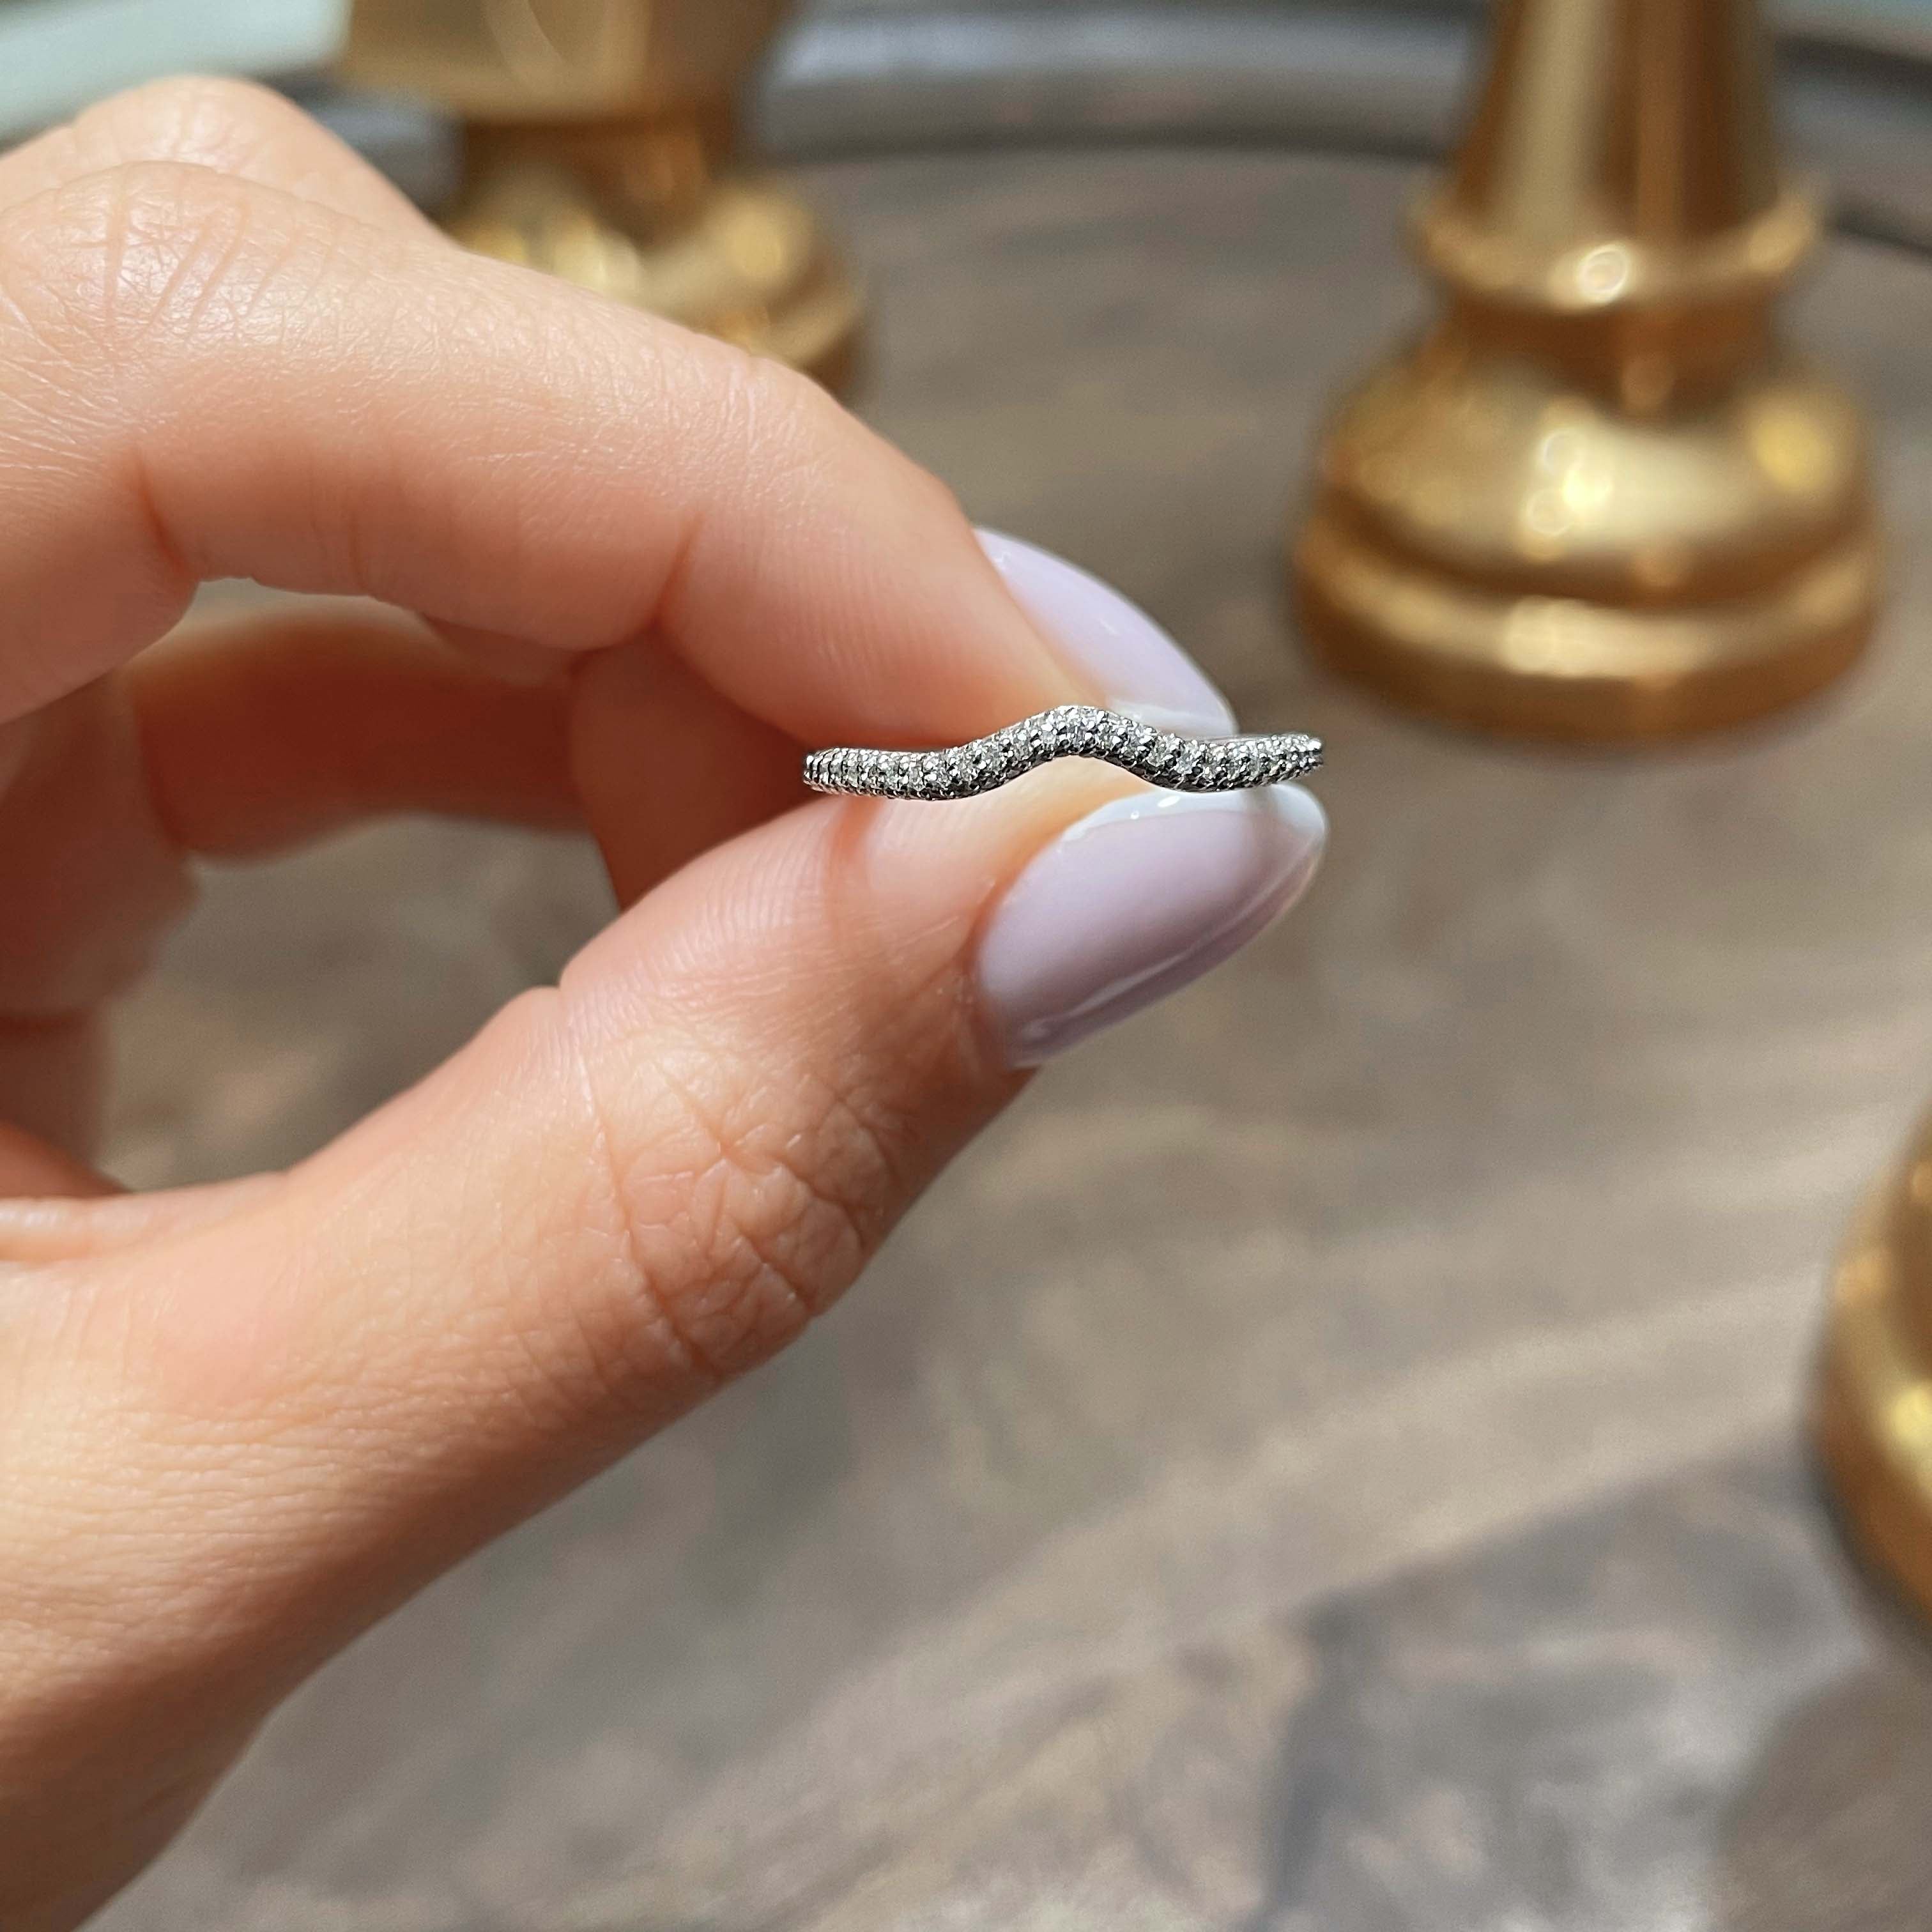 Anastasia Lab Grown Curved Wedding Ring   (0.75 Carat) -Platinum